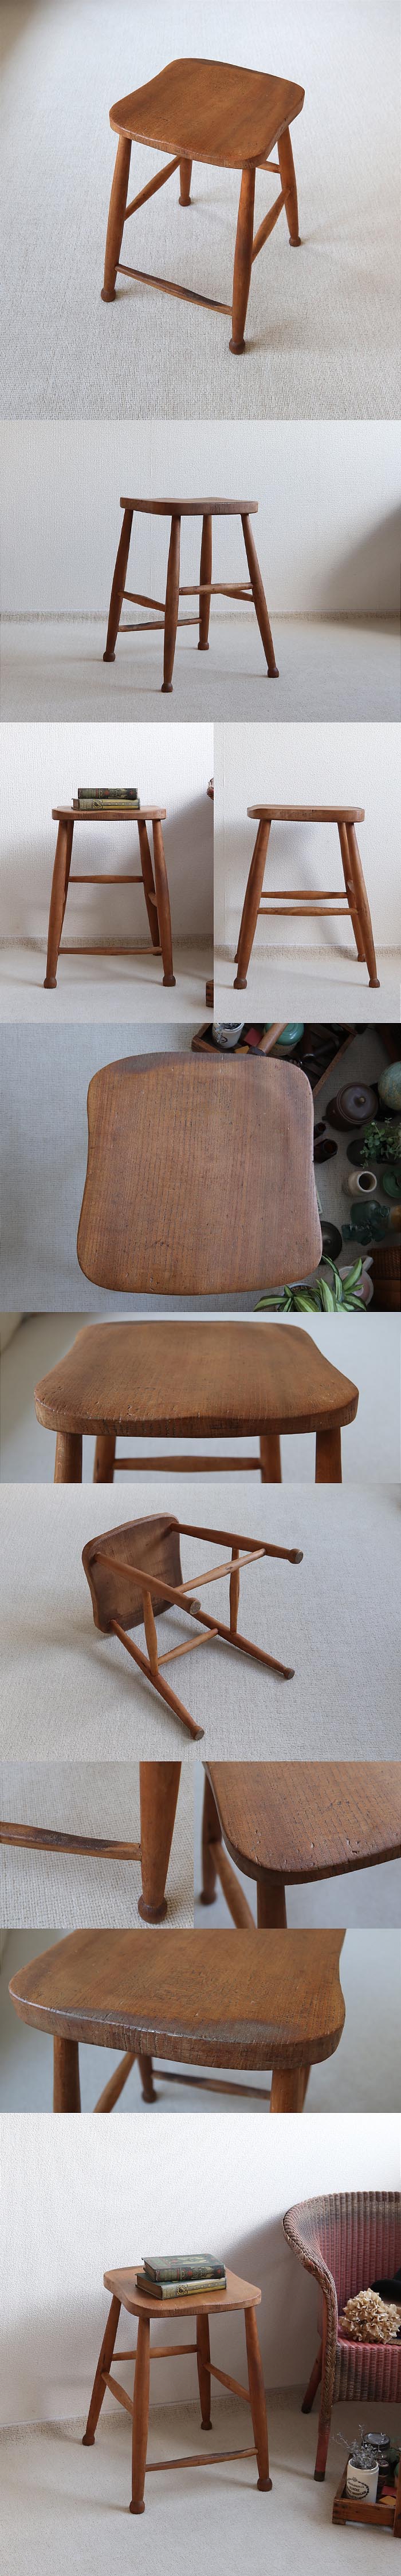 イギリス アンティーク ウッドスツール 木製椅子 レアアイテム アトリエ 家具「一枚板座面」T-834